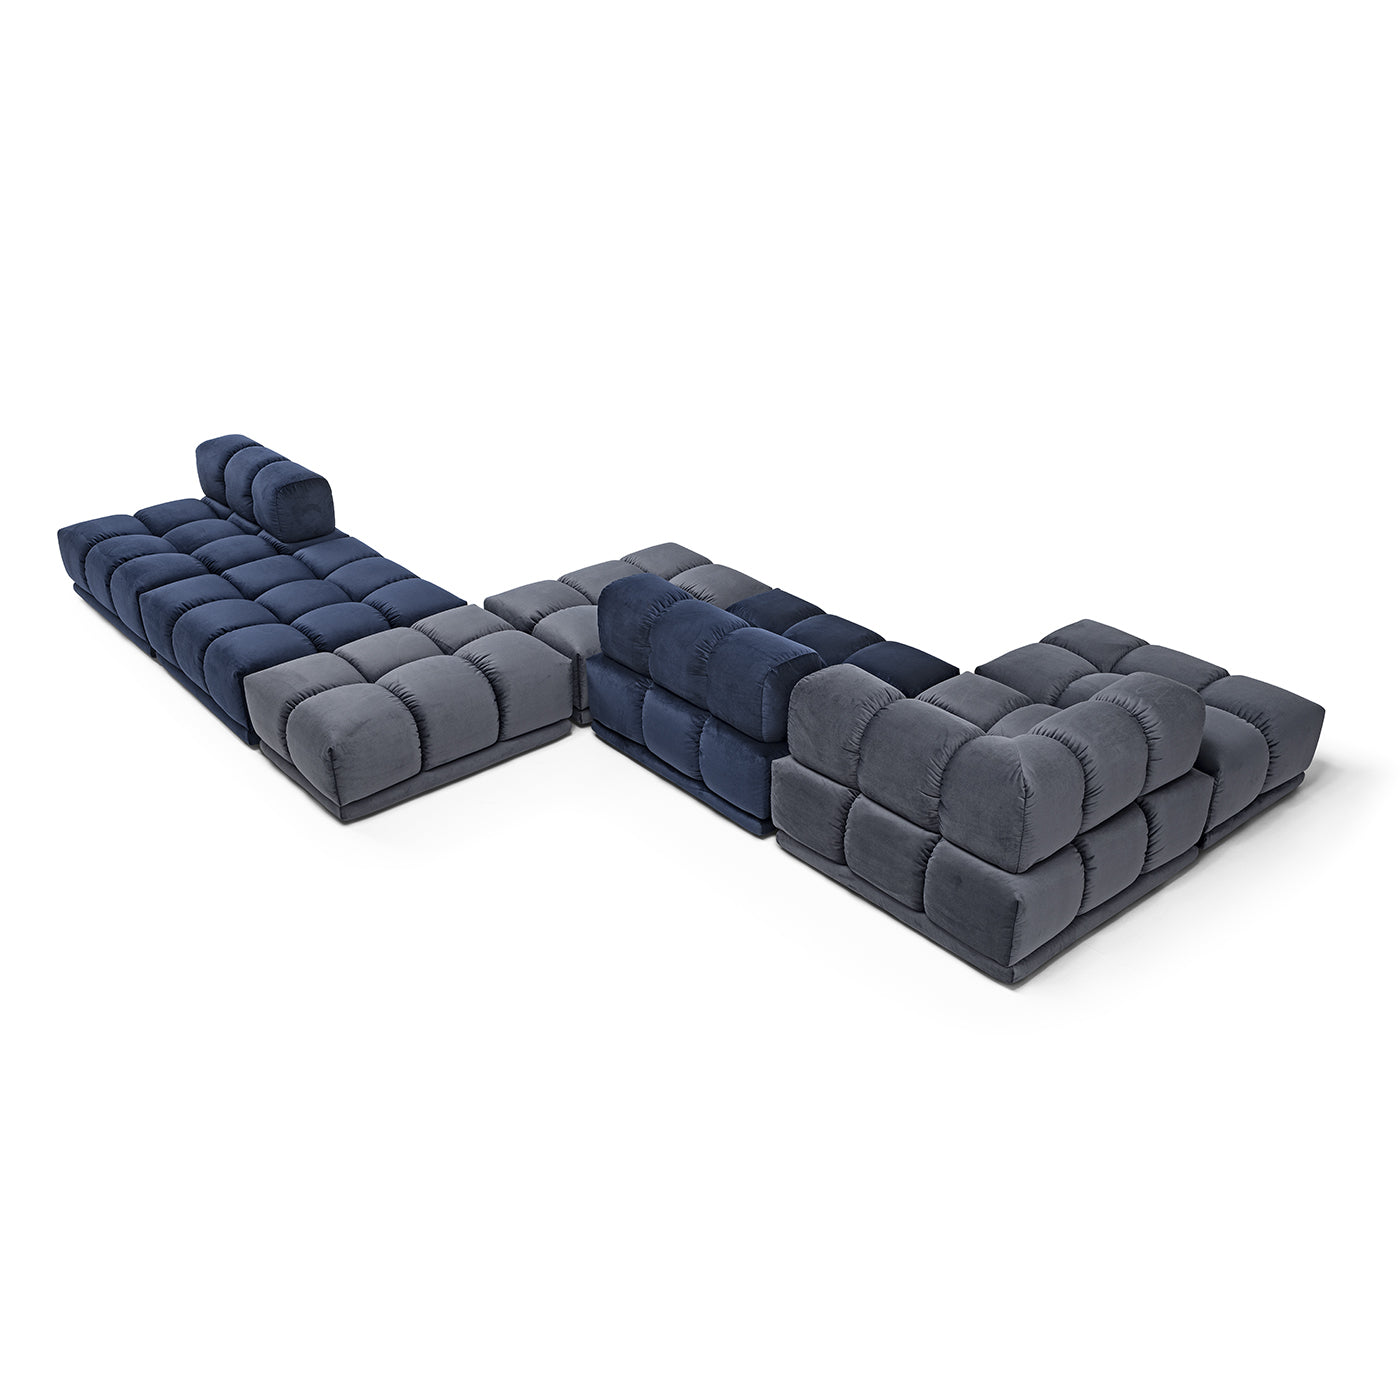 Sacai Modular Gray and Blue Sofa - Alternative view 3